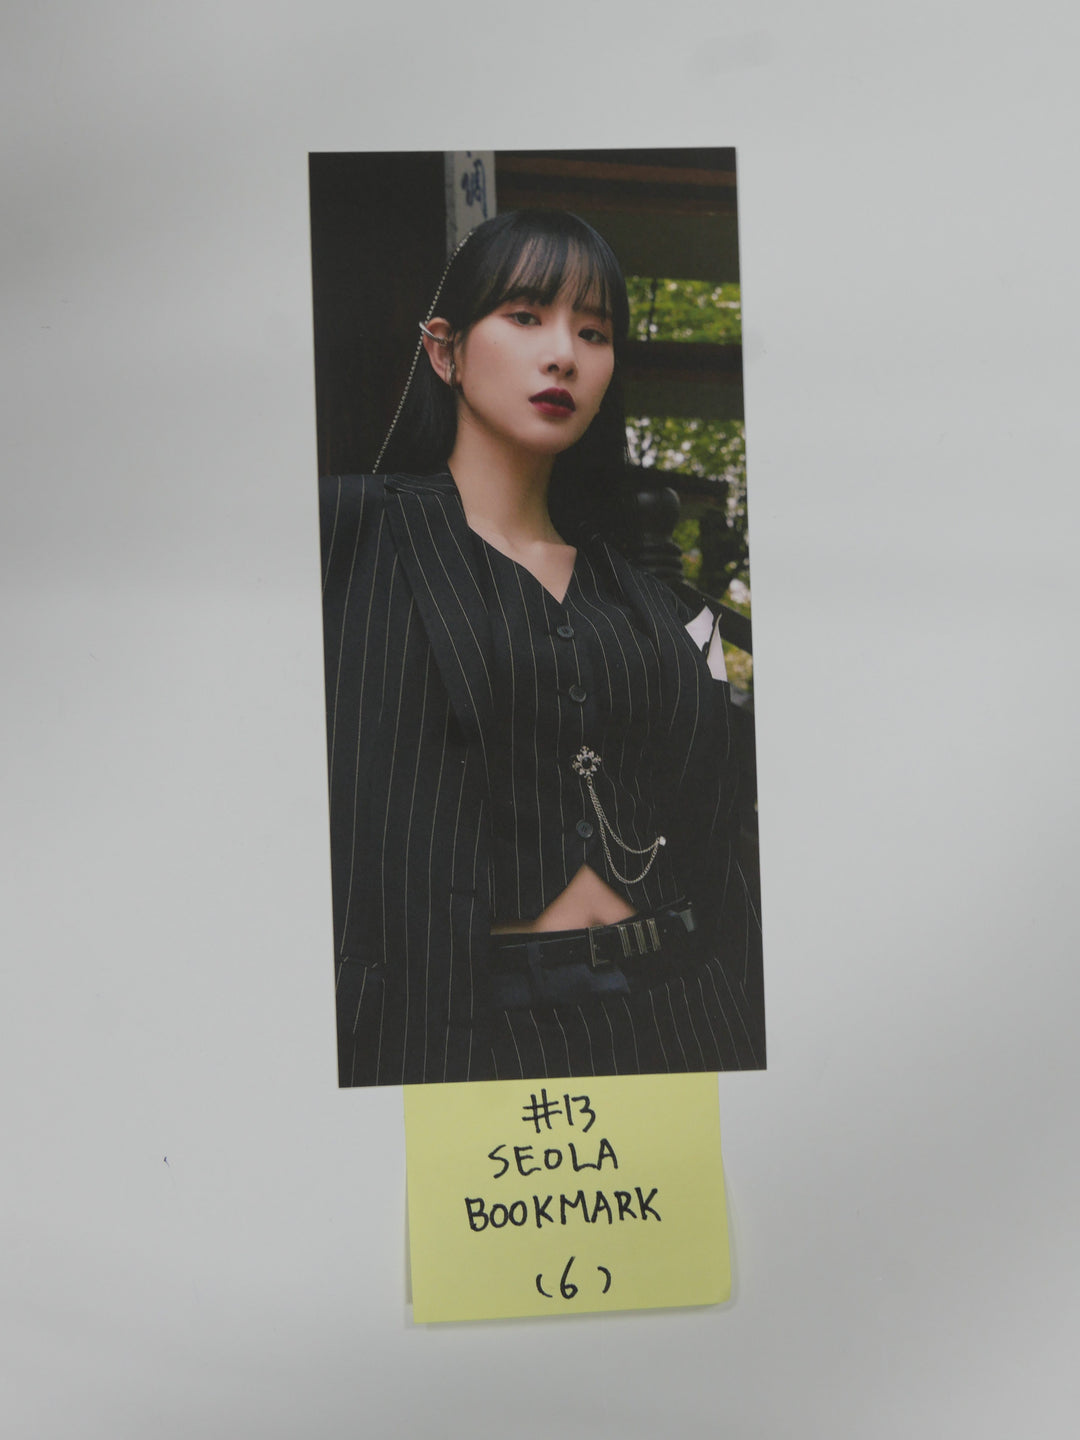 우주소녀 더 블랙 "My Attitude" - 공식 포토카드 &amp; 북마크